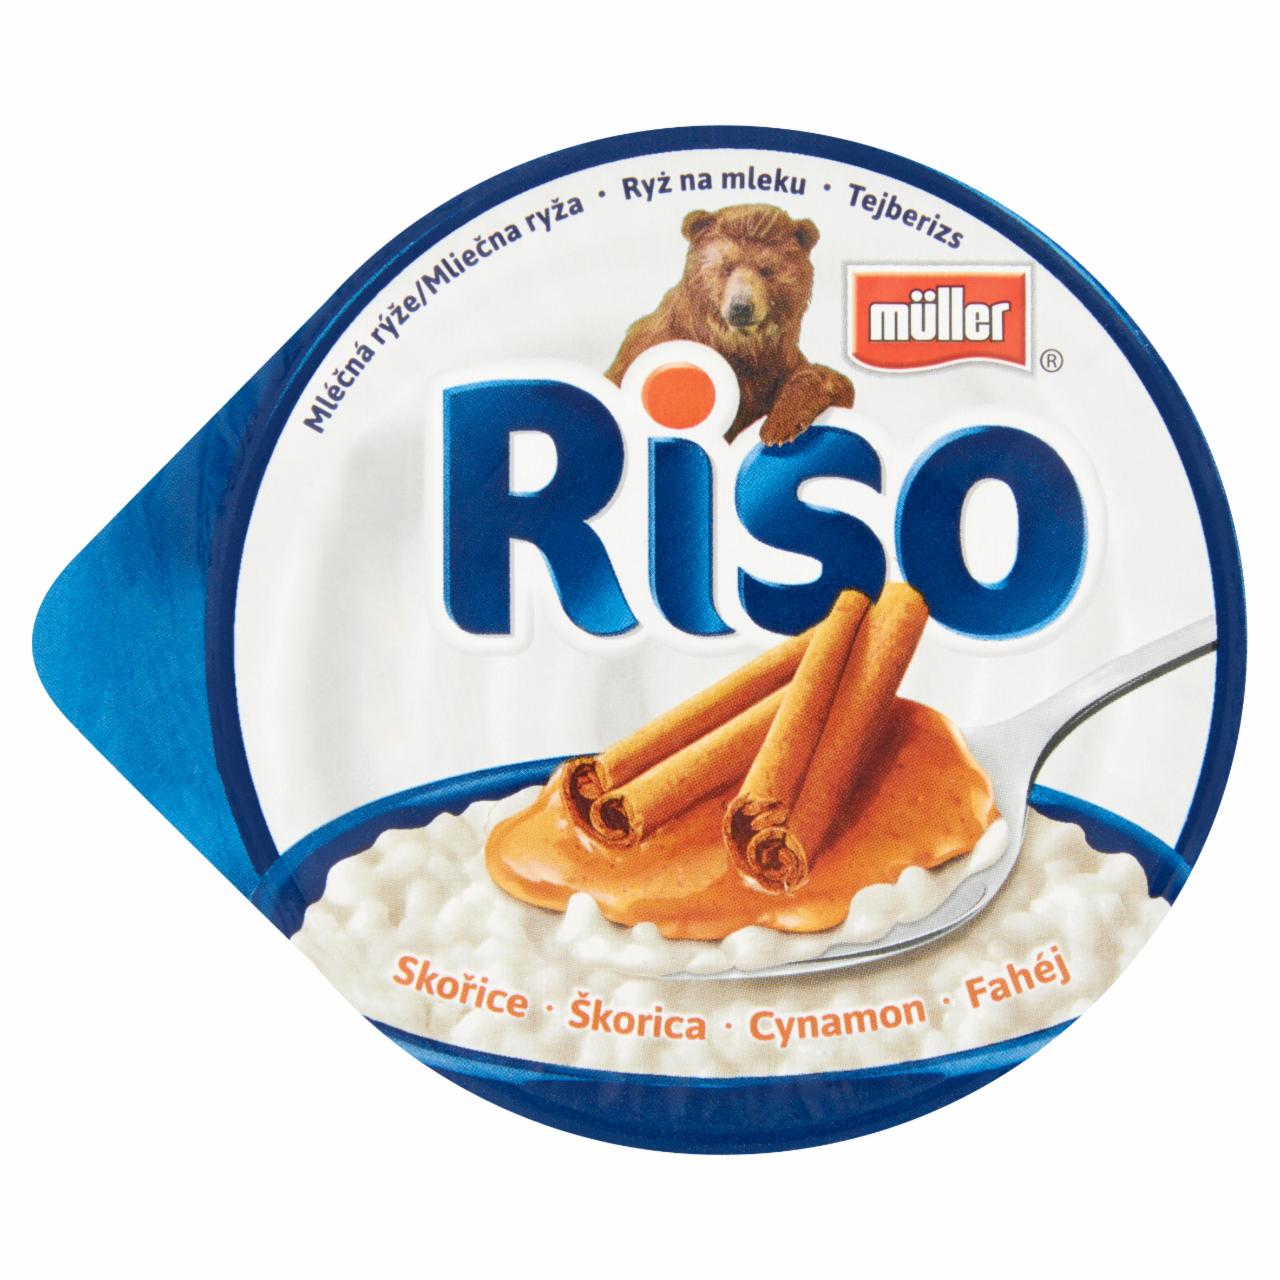 Képek - Müller Riso tejberizs desszert fahéj készítménnyel 200 g